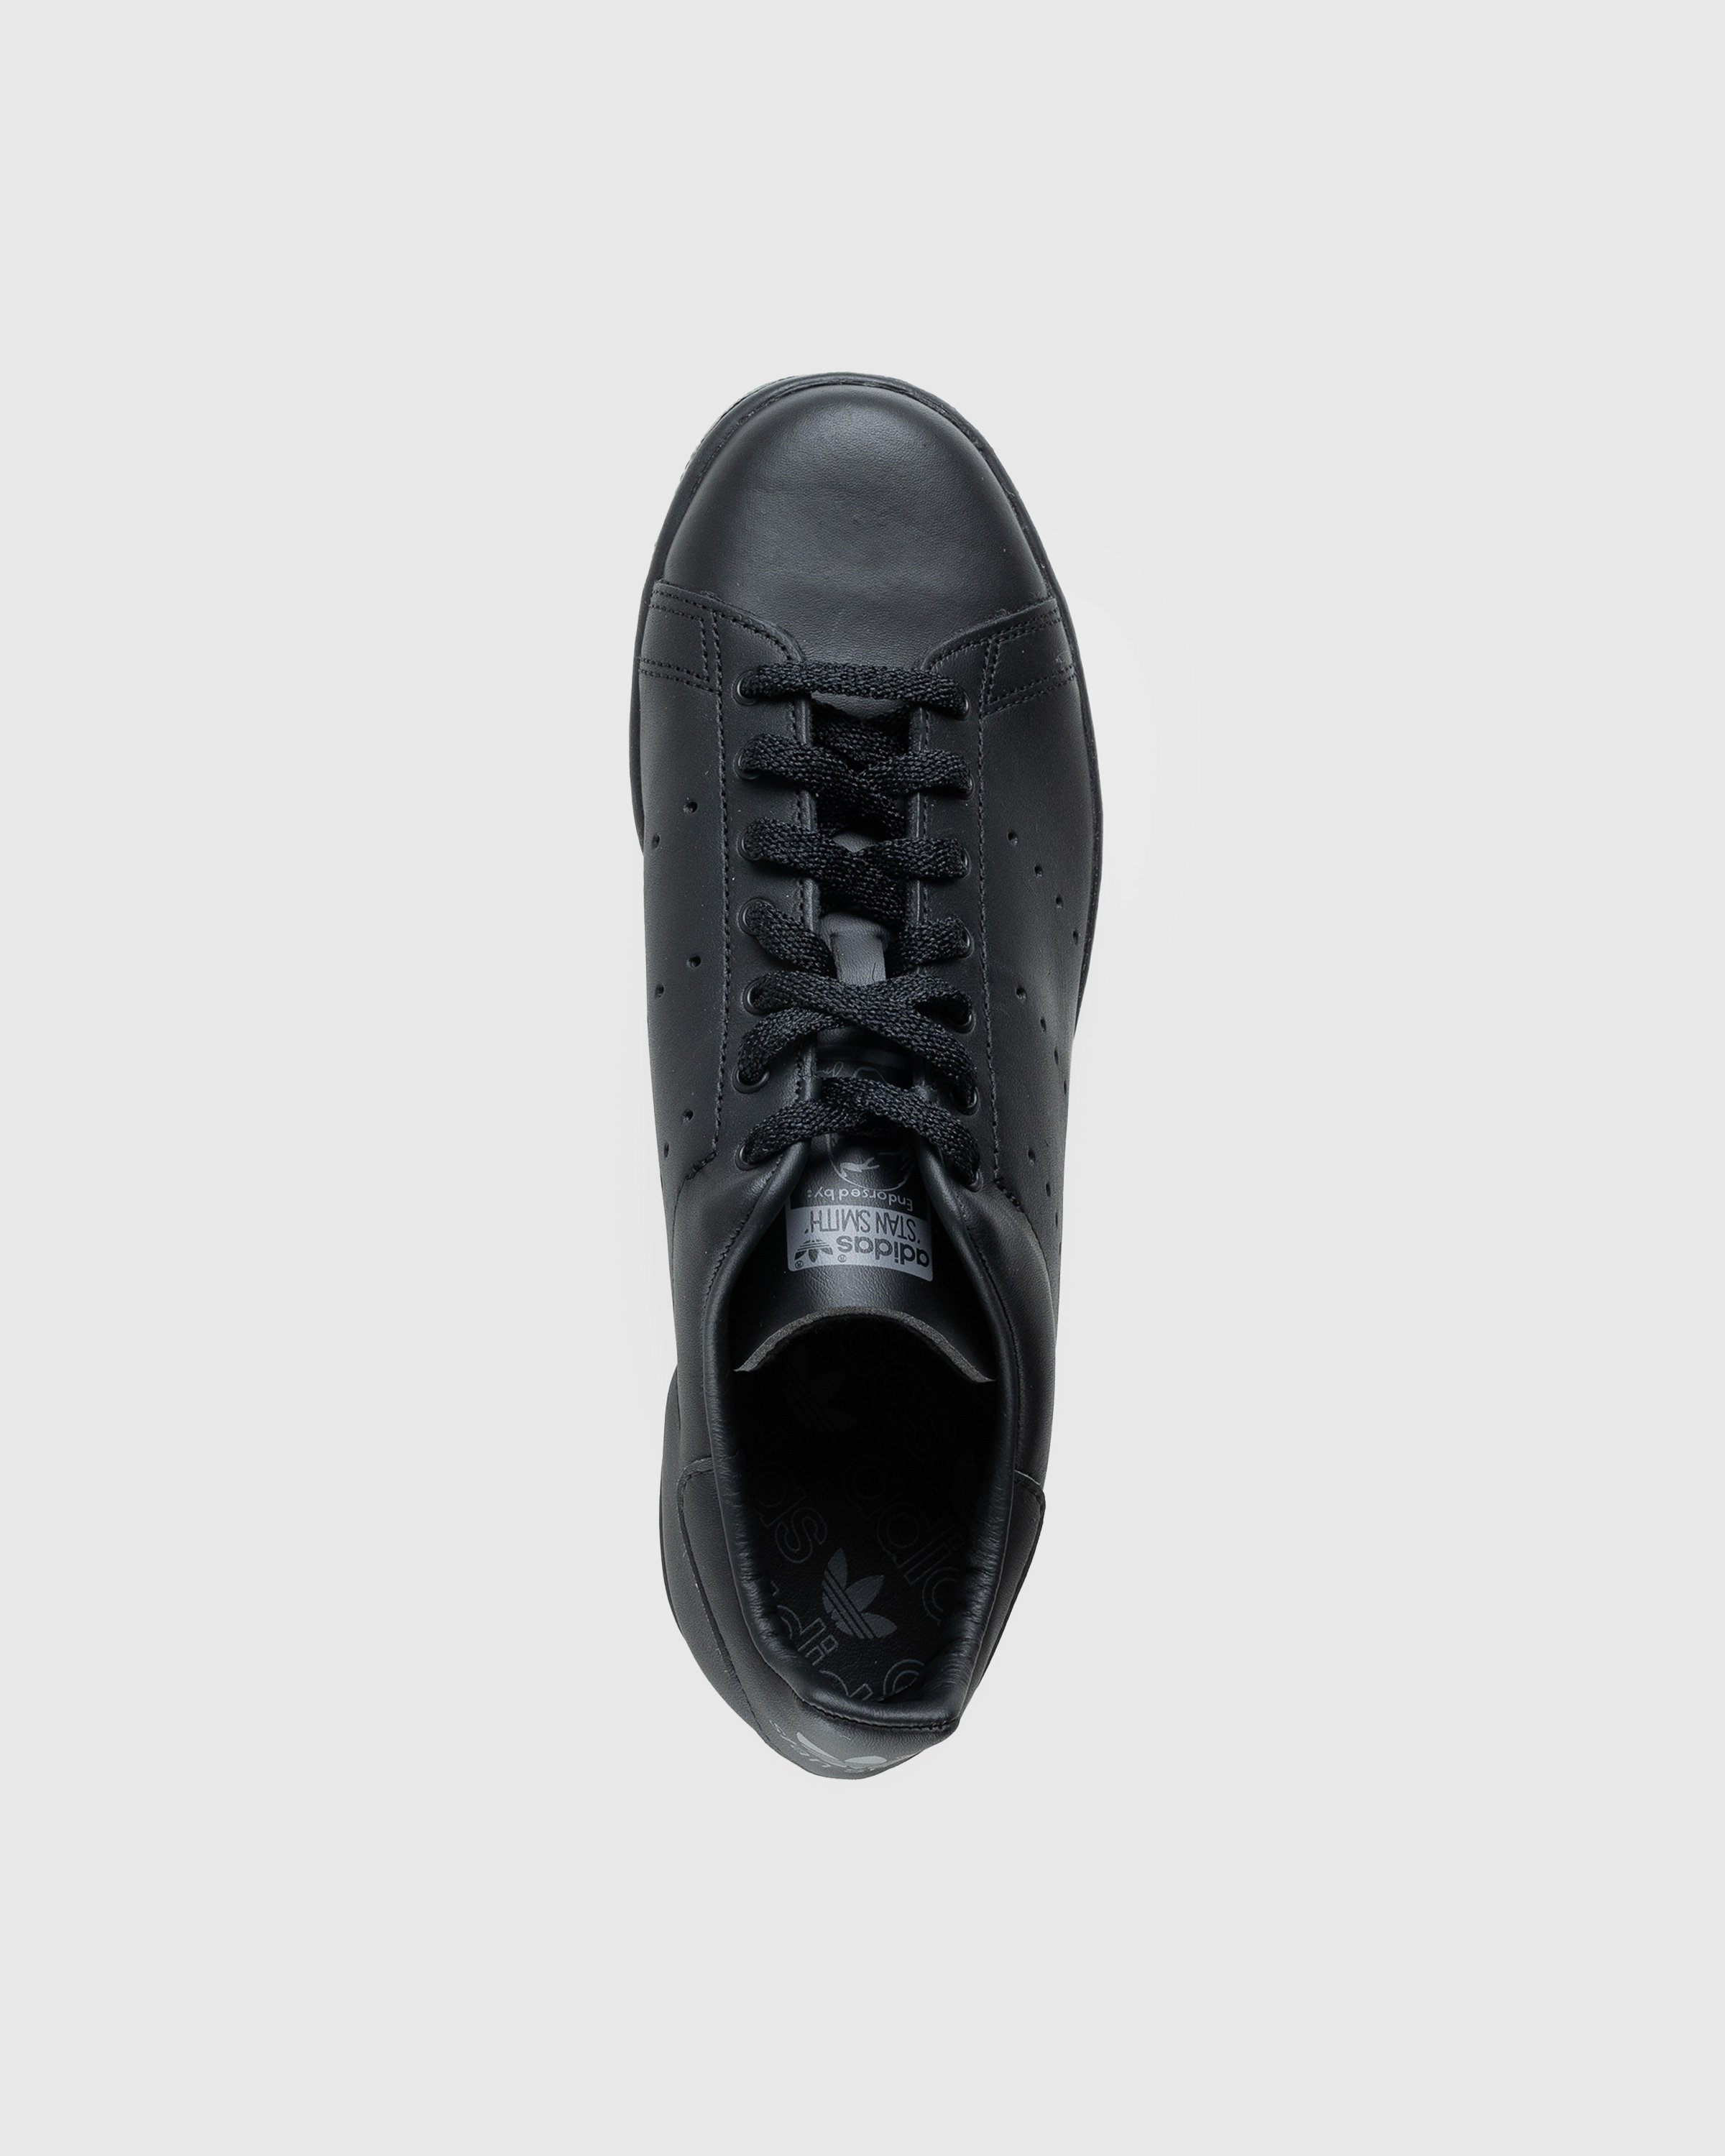 Adidas – Stan Smith 80s Black | Highsnobiety Shop